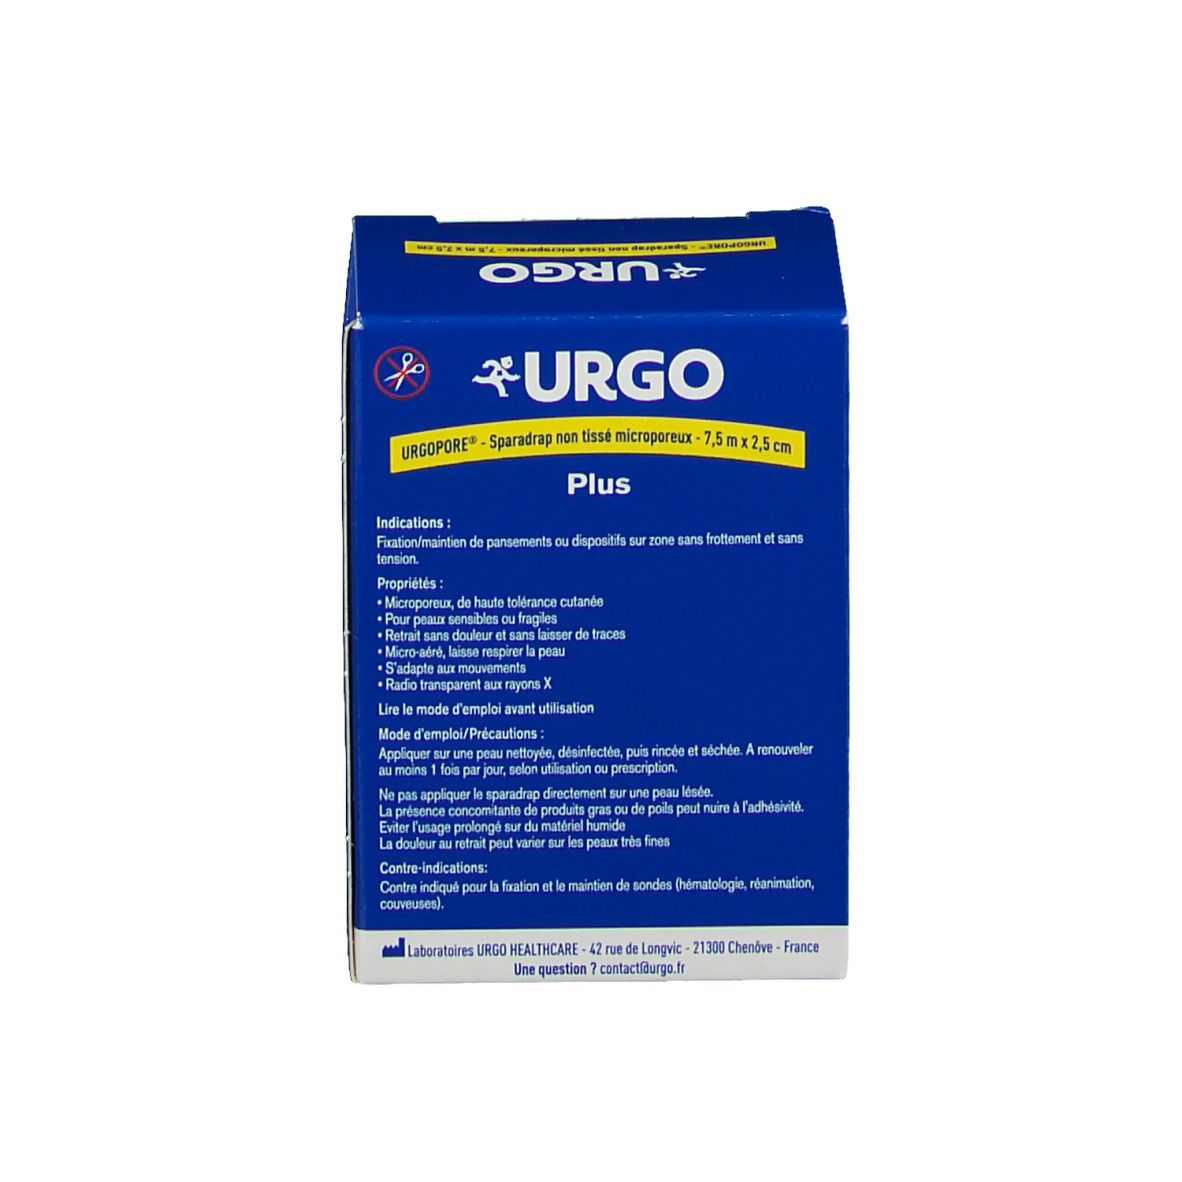 URGO Urgopore® plus Sparadrap non tissé microporeux 7,5 m x 2,5 cm